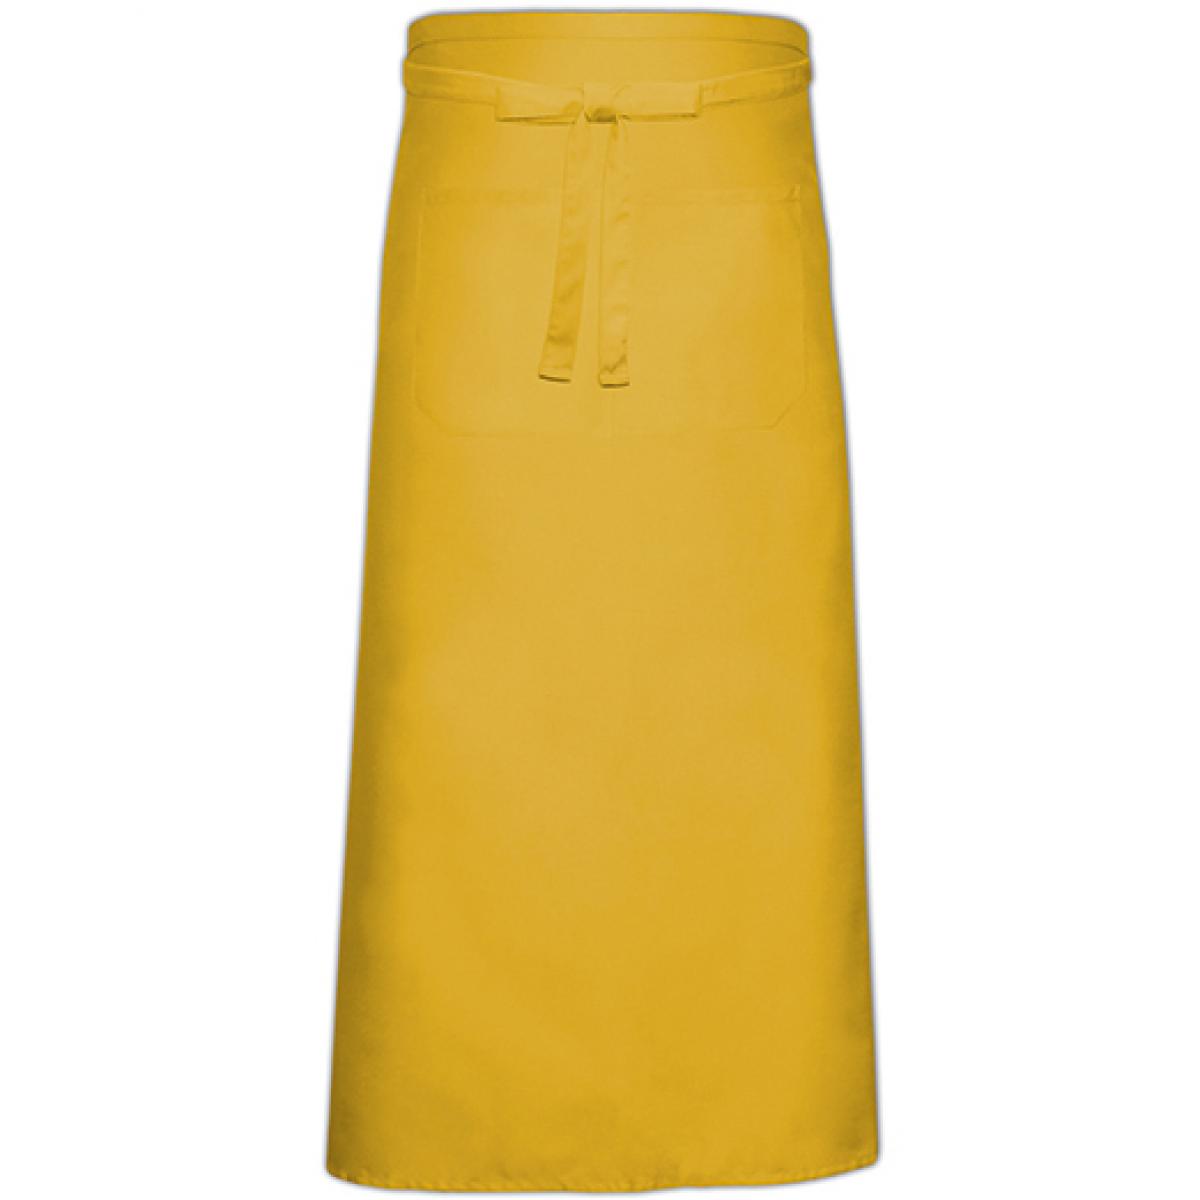 Hersteller: Link Kitchen Wear Herstellernummer: FS100100 Z Artikelbezeichnung: Bistro Apron with Front Pocket - 100 x 100 cm Farbe: Yellow